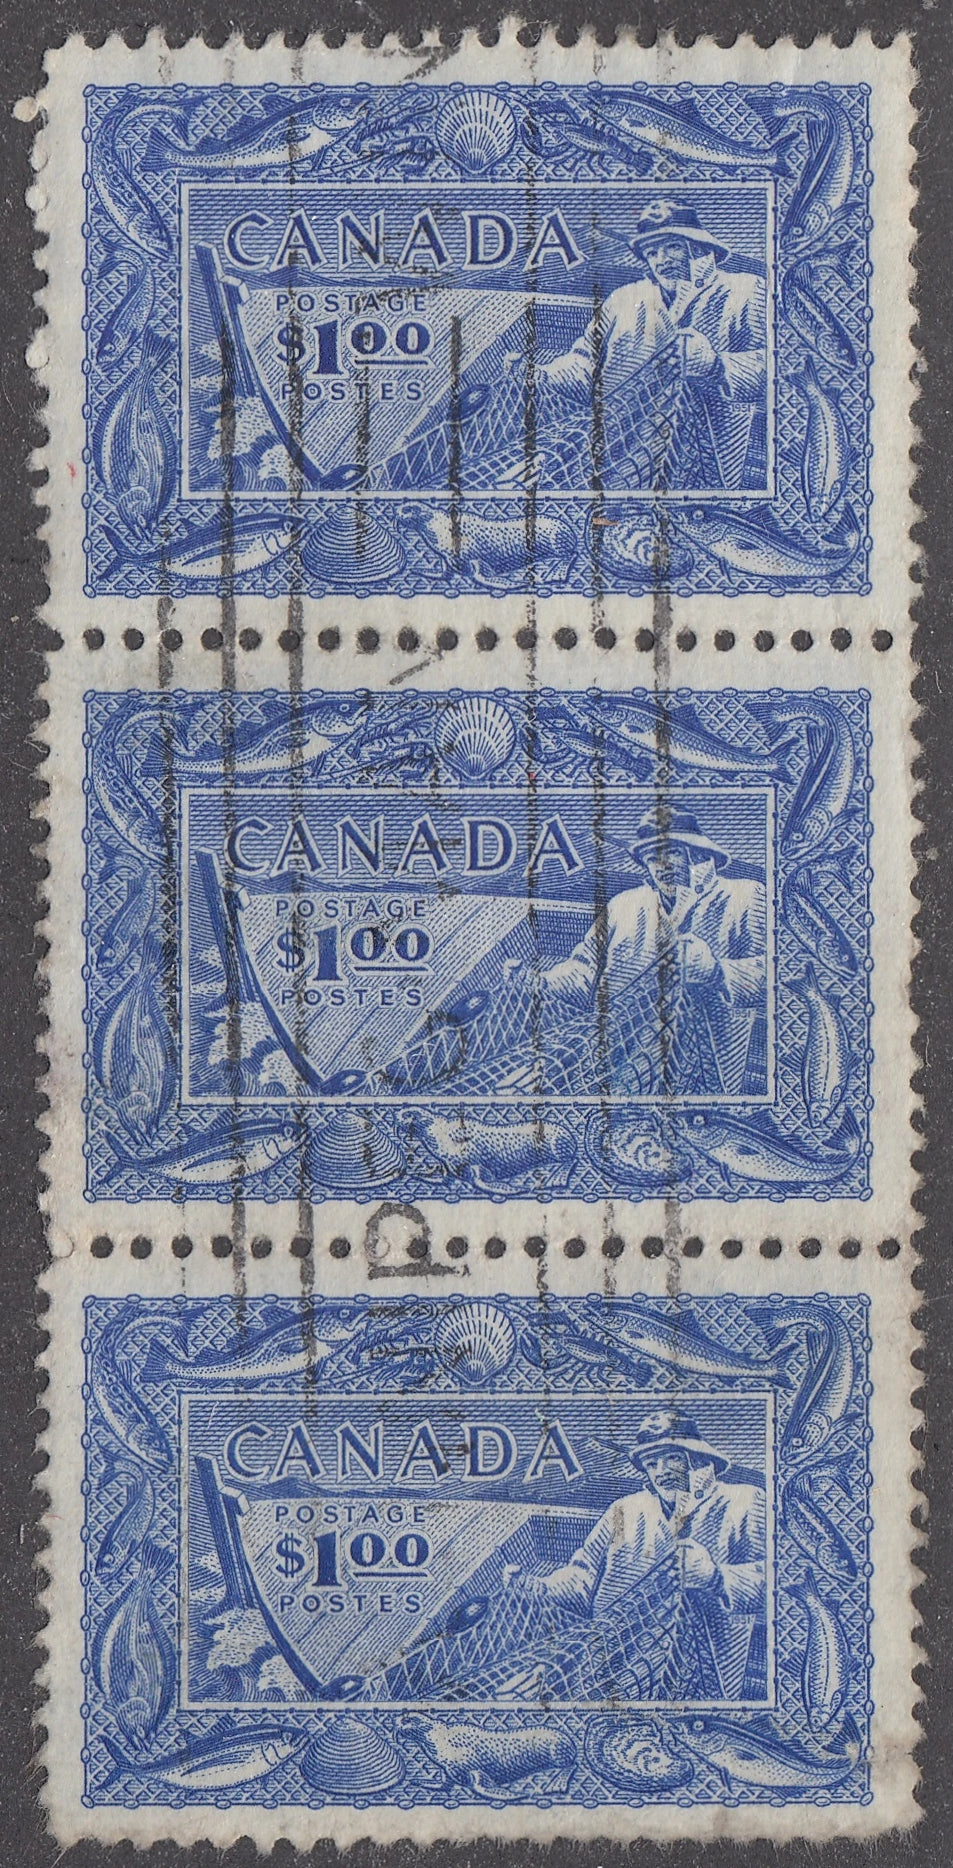 0302CA2106 - Canada #302 - Vert. Strip